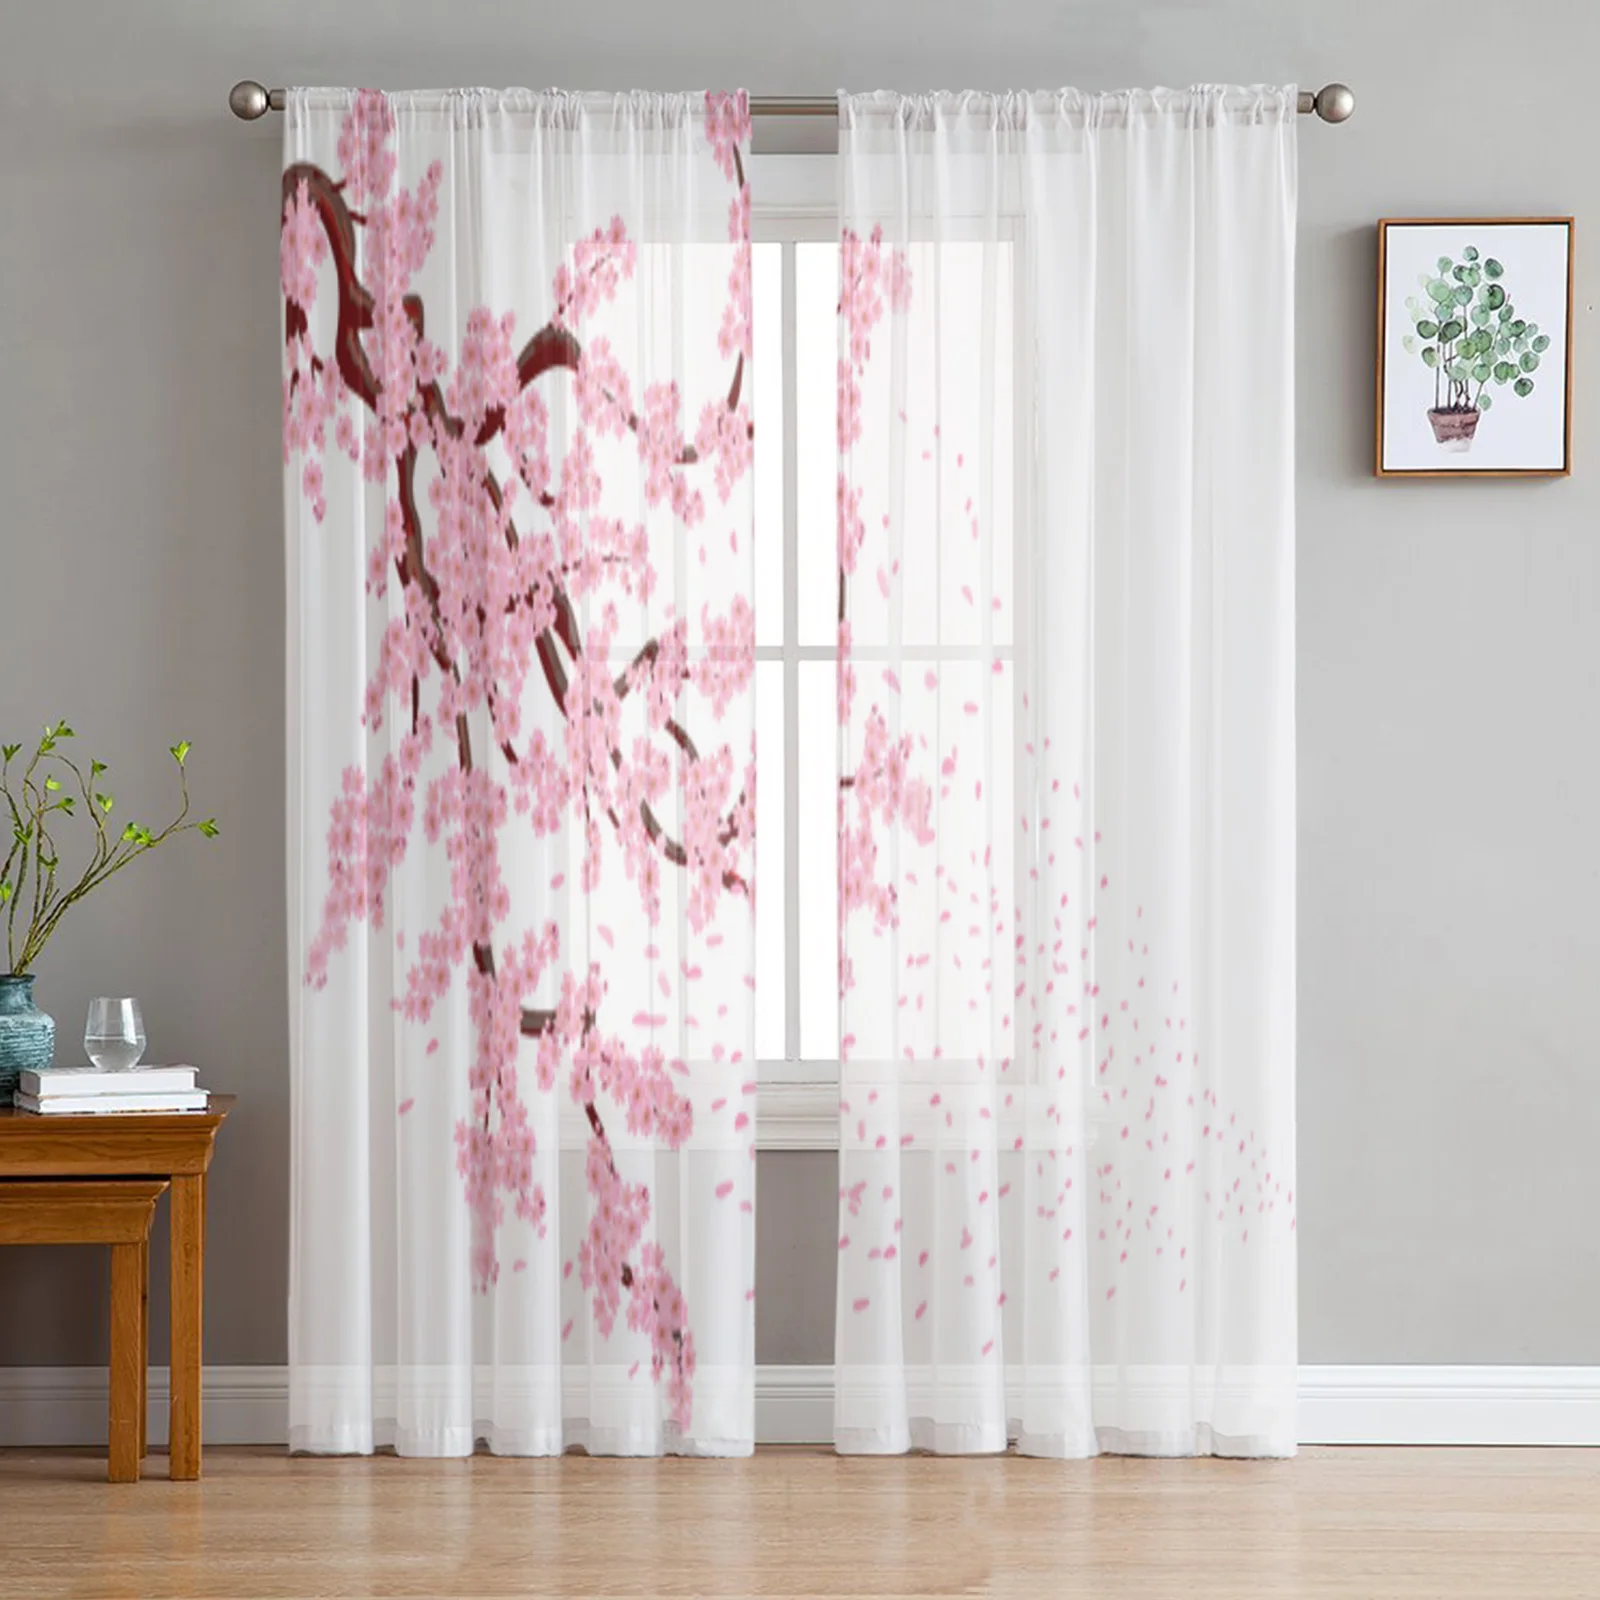 

Тюль с цветами вишни, прозрачные оконные шторы для гостиной, спальни, современные драпировки из искусственной кожи, тканевые занавески